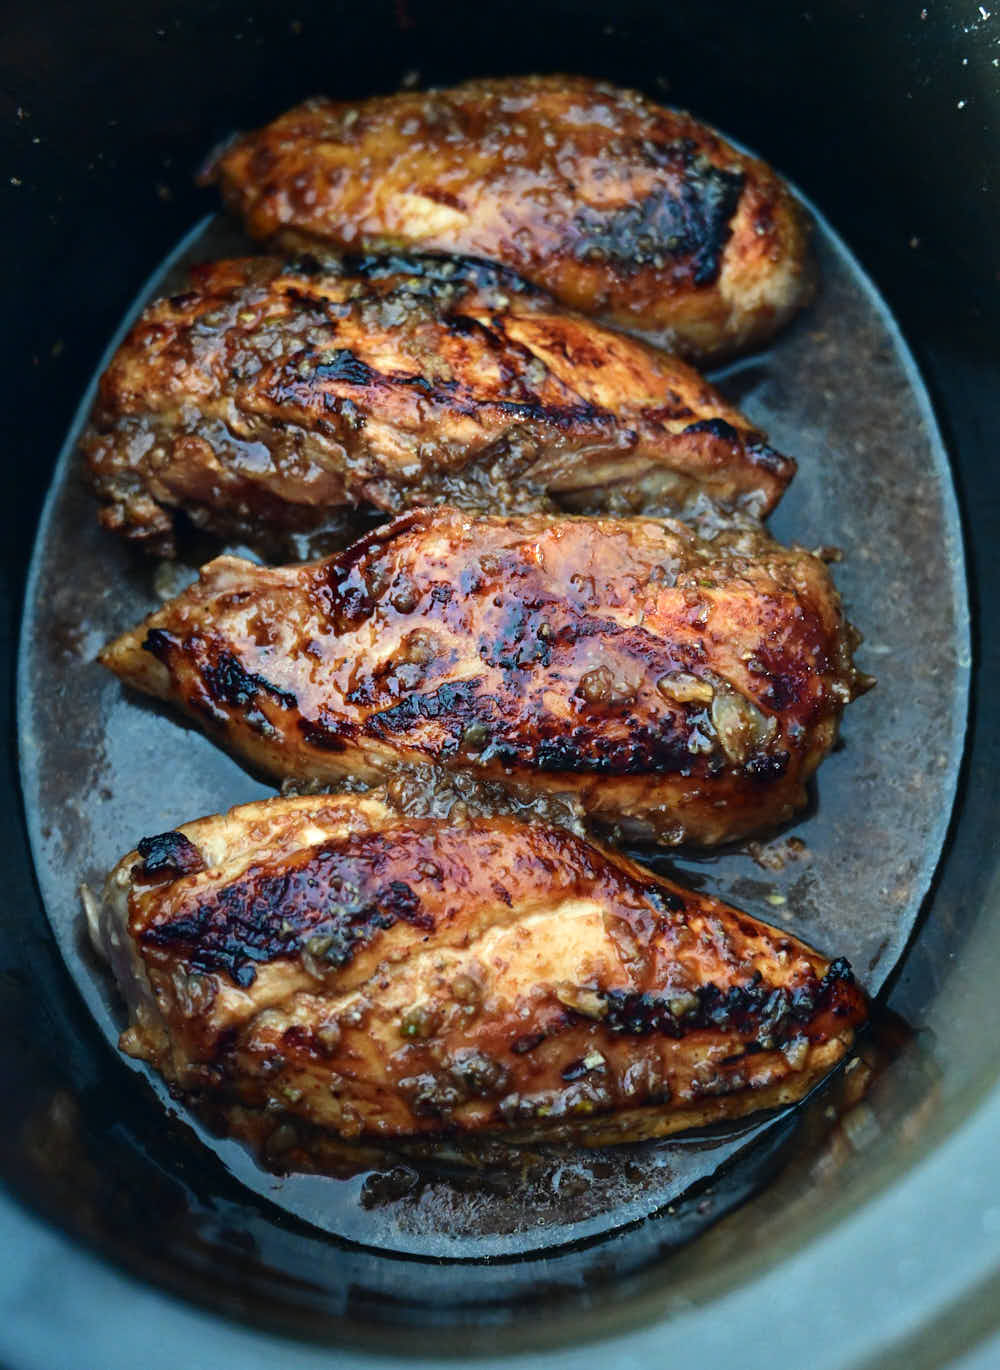 Skin-on chicken breasts inside a Crock Pot.